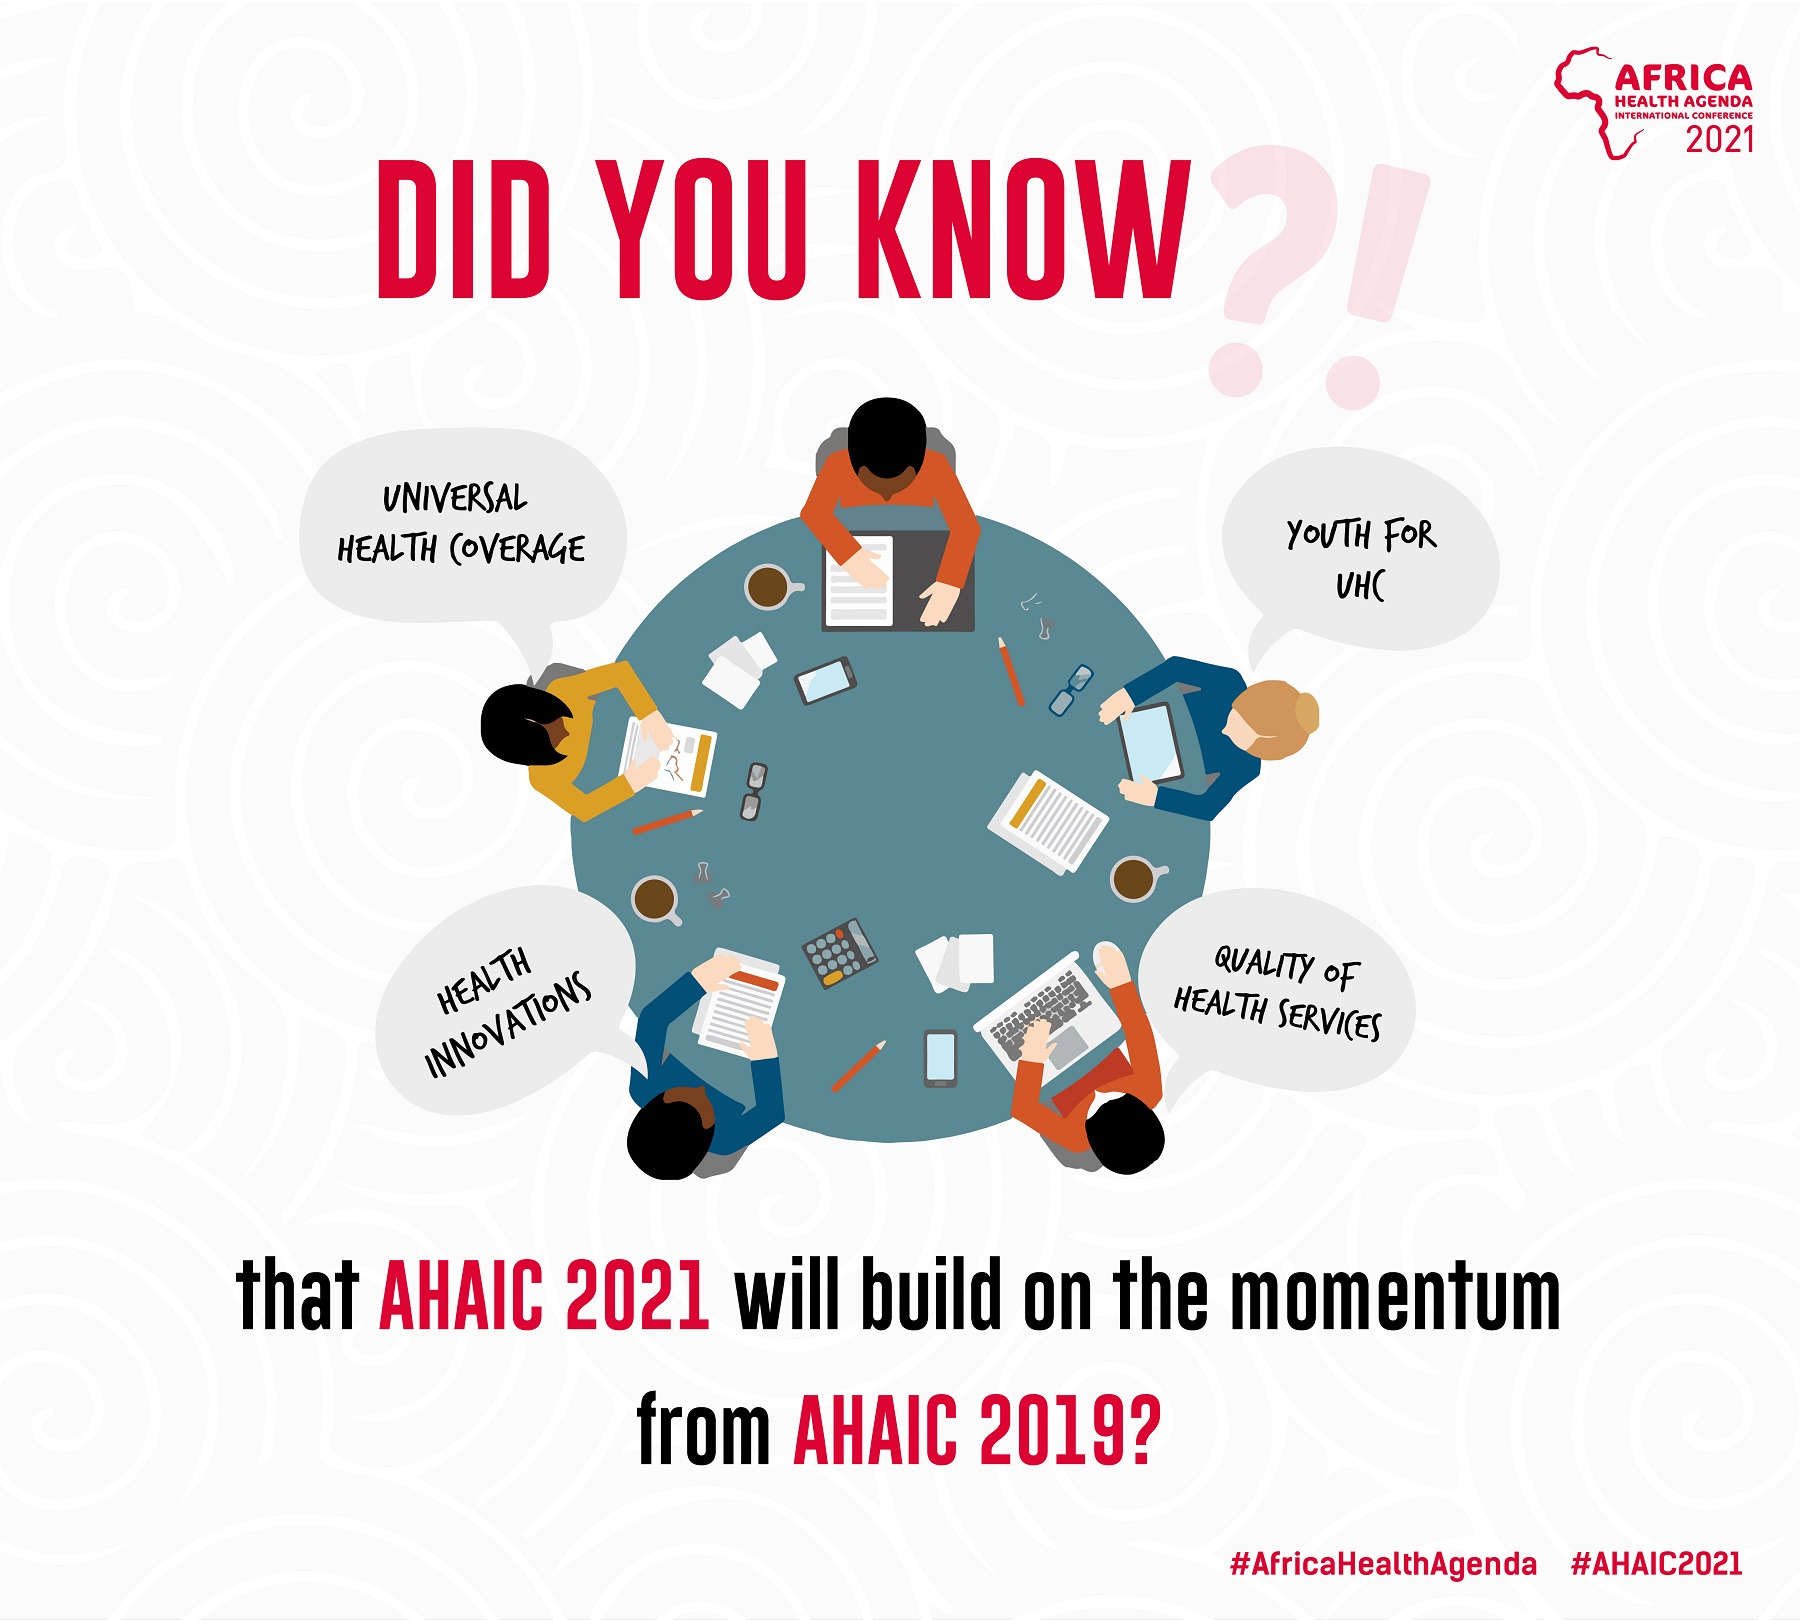 AHAIC 2021 Virtual Conference | 8-10 March | #AHAIC2021